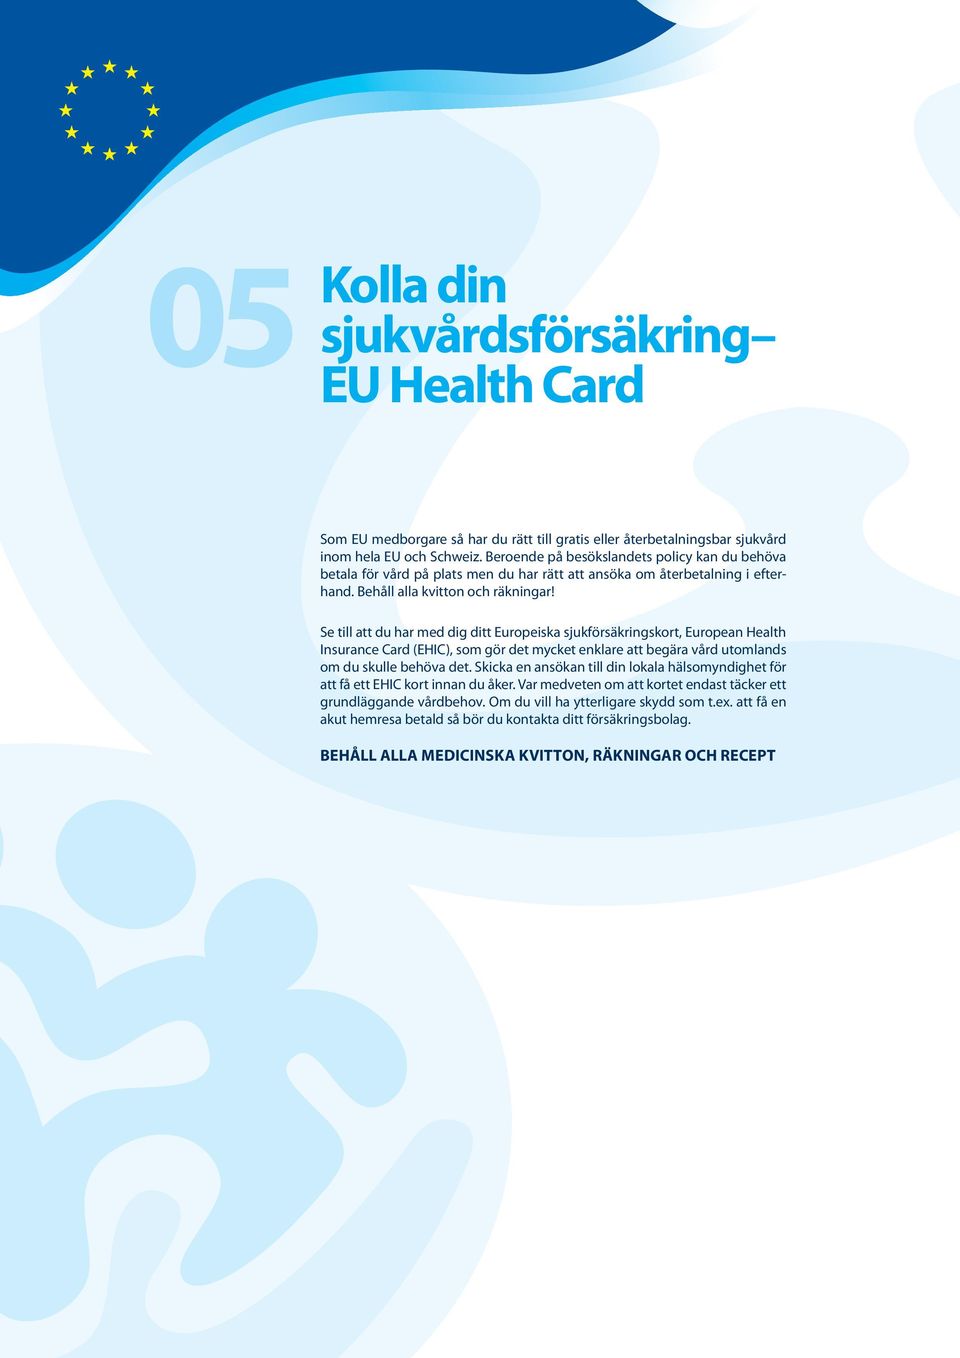 Se till att du har med dig ditt Europeiska sjukförsäkringskort, European Health Insurance Card (EHIC), som gör det mycket enklare att begära vård utomlands om du skulle behöva det.